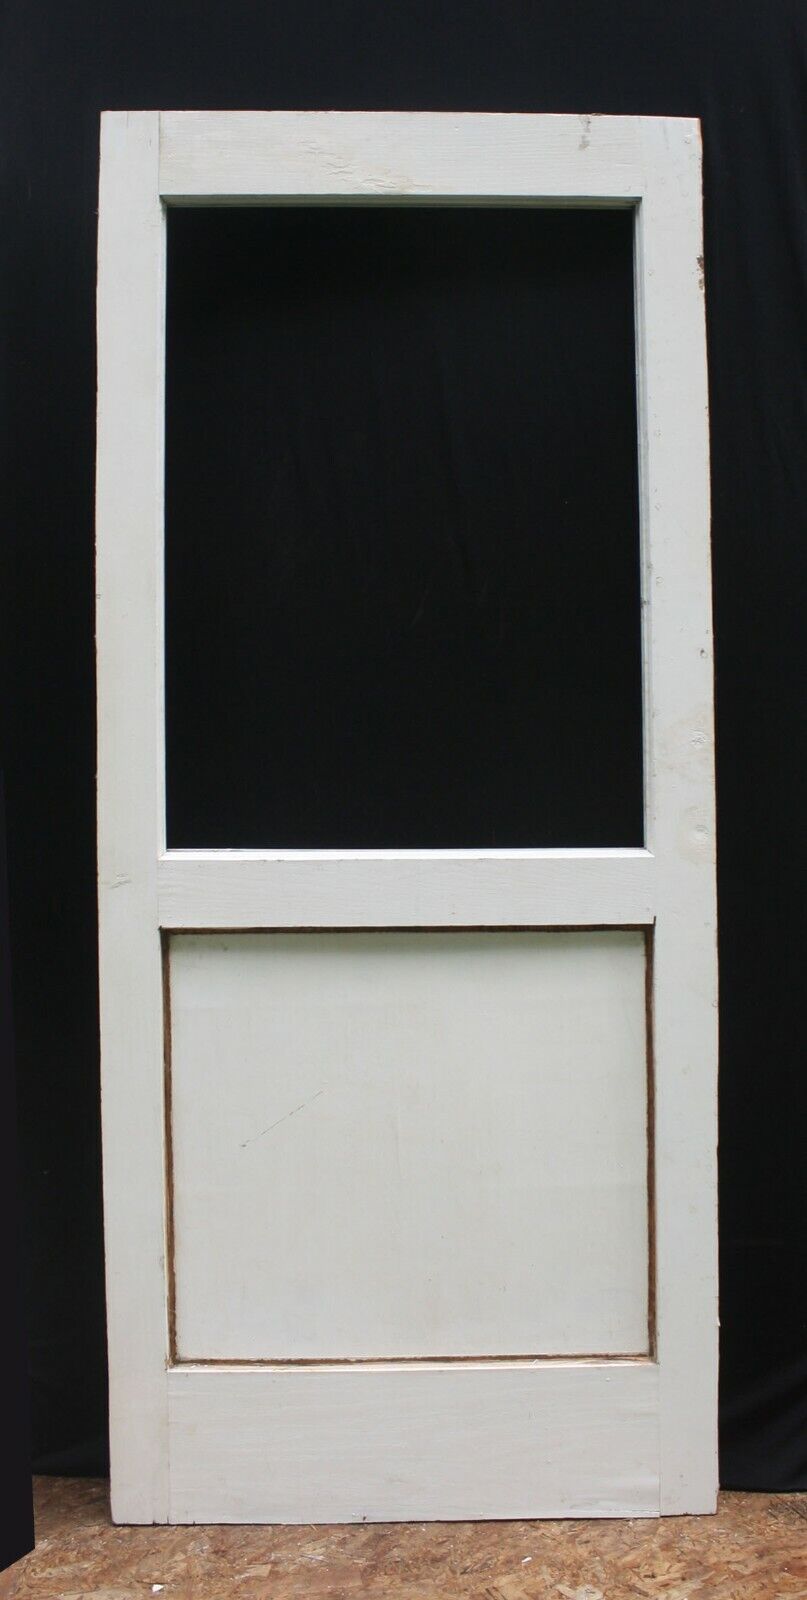 33"x79"x1.75" Antique Vintage Old Oak Wood Wooden Exterior Entry Back Door Window